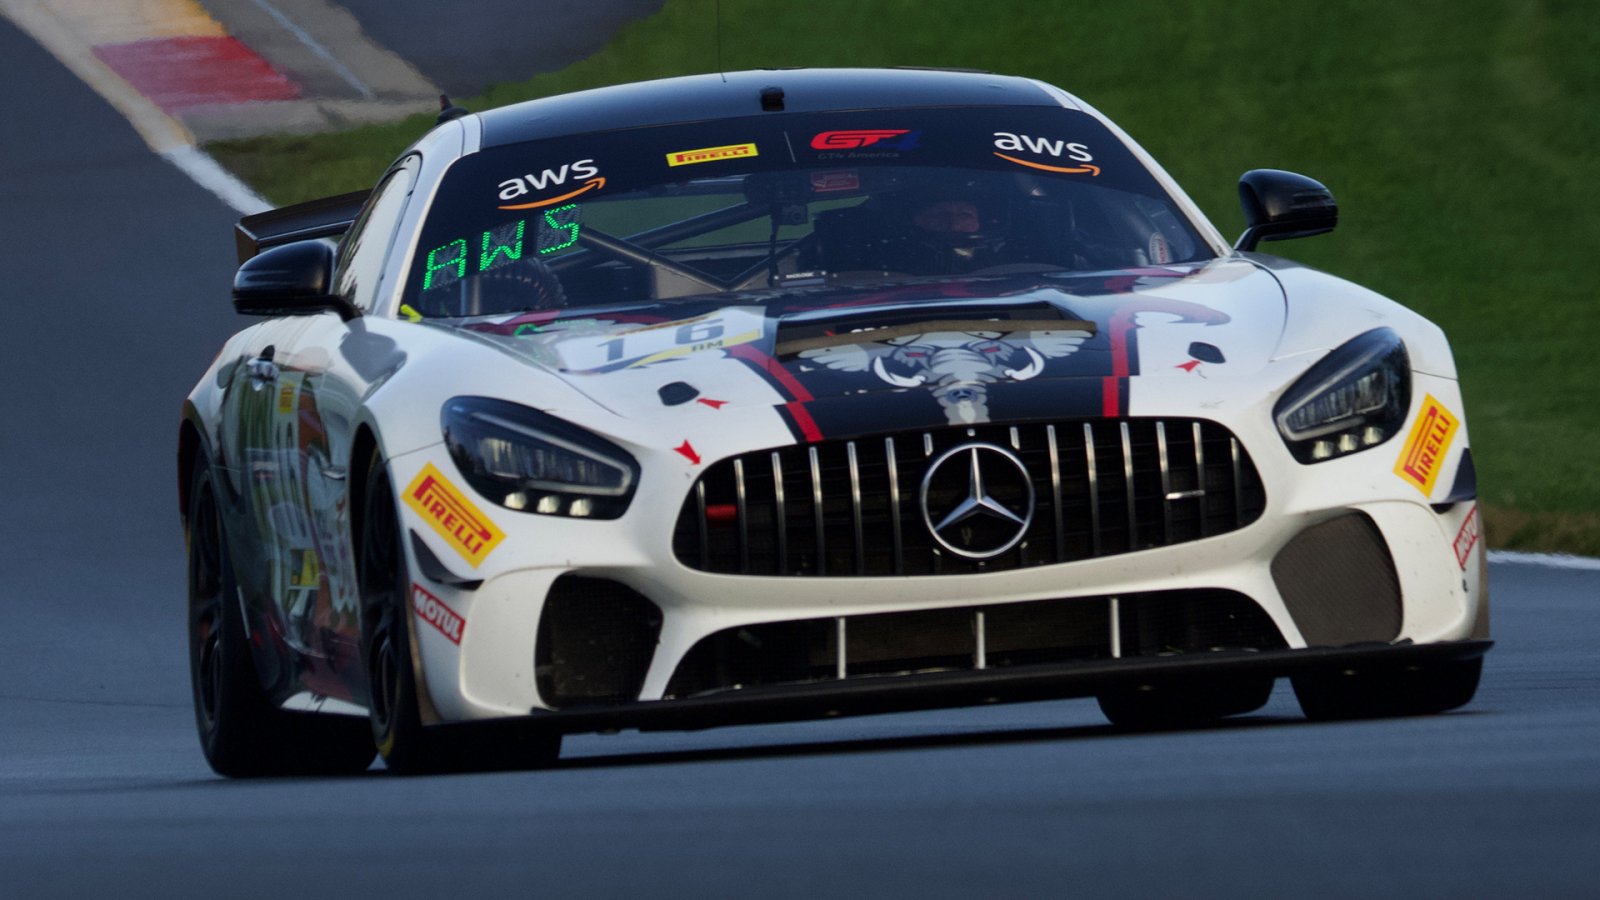 Mercedes, Porsche Claim Poles in Abbreviated Qualifying at Watkins Glen